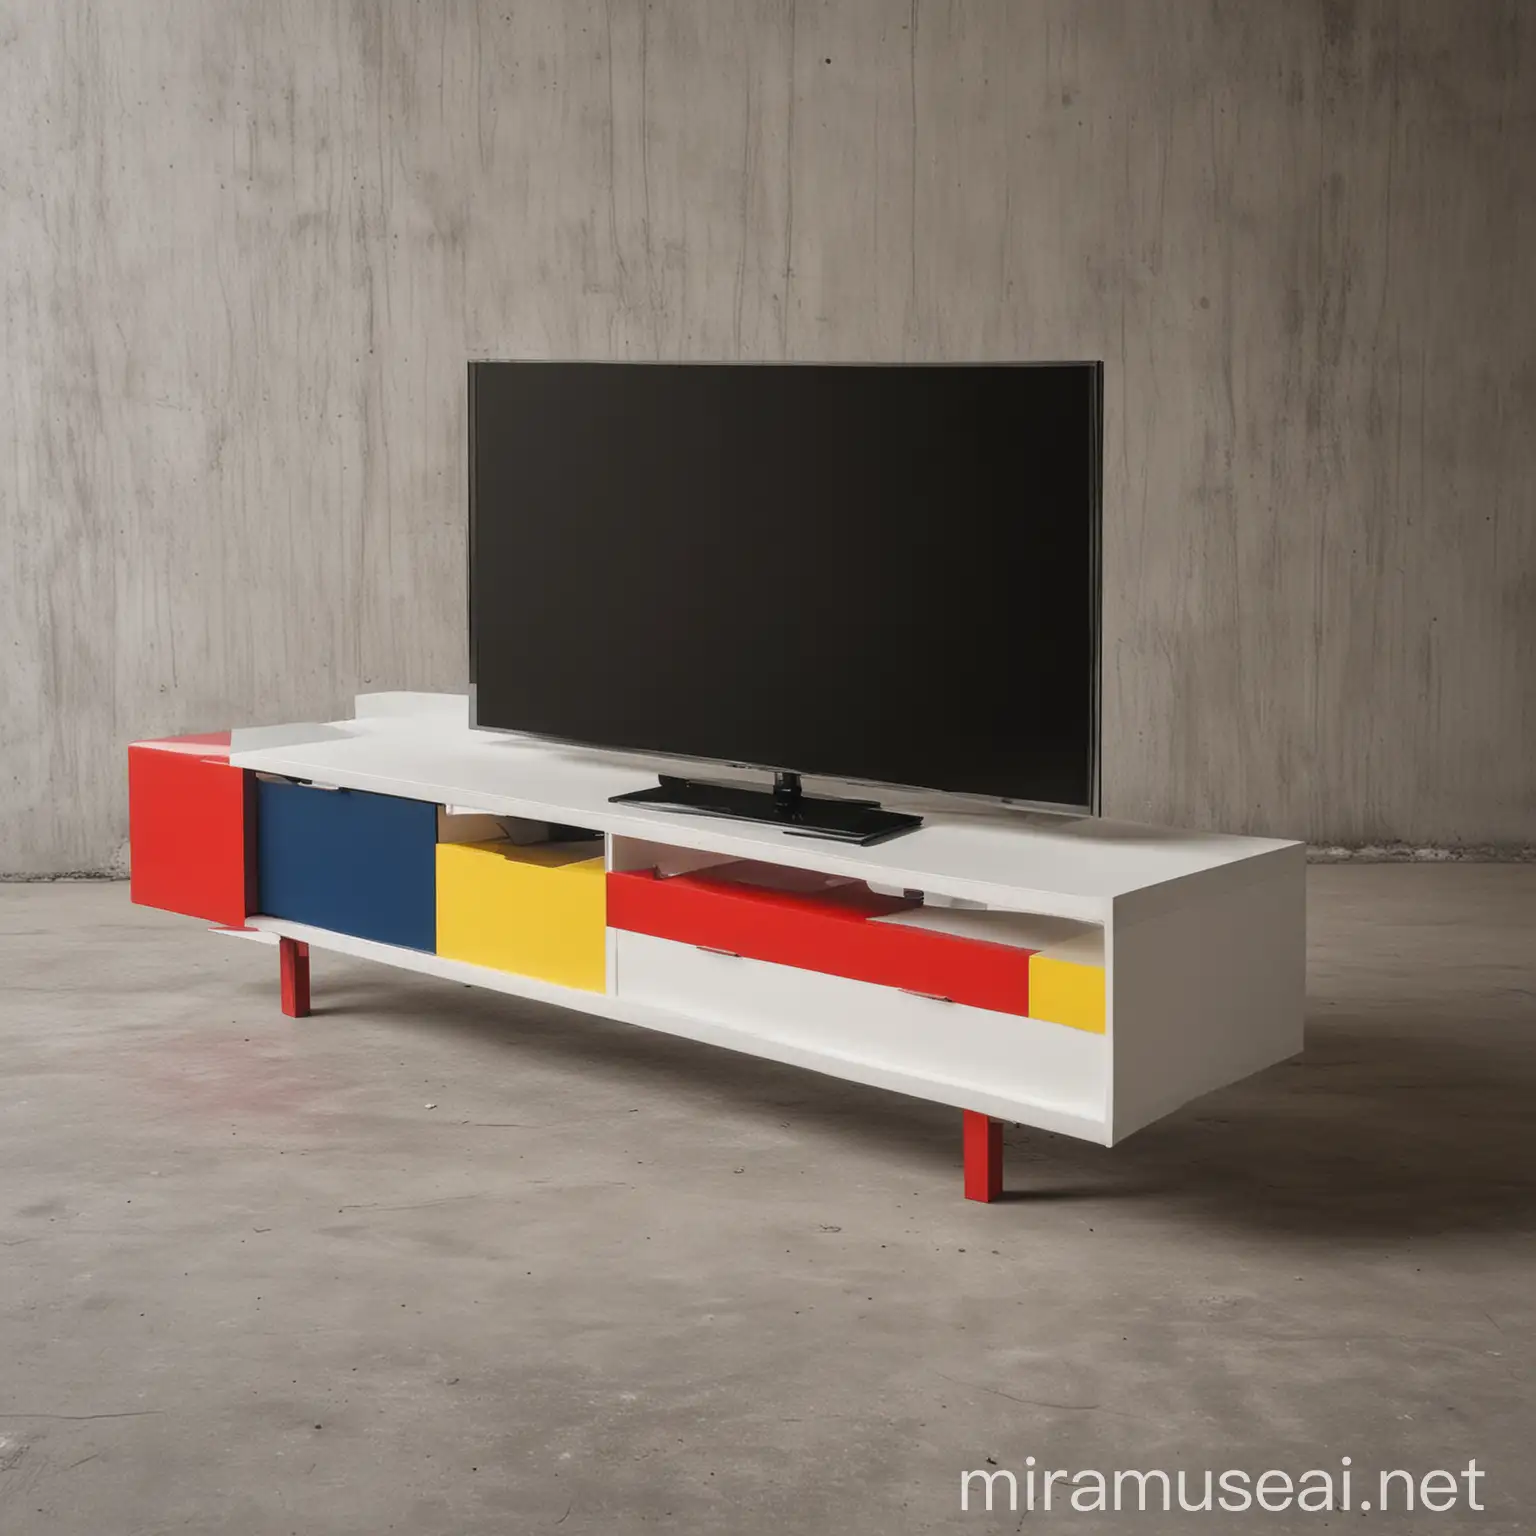 De Stijl Style TV Table Unit Design Minimalist Geometric Composition